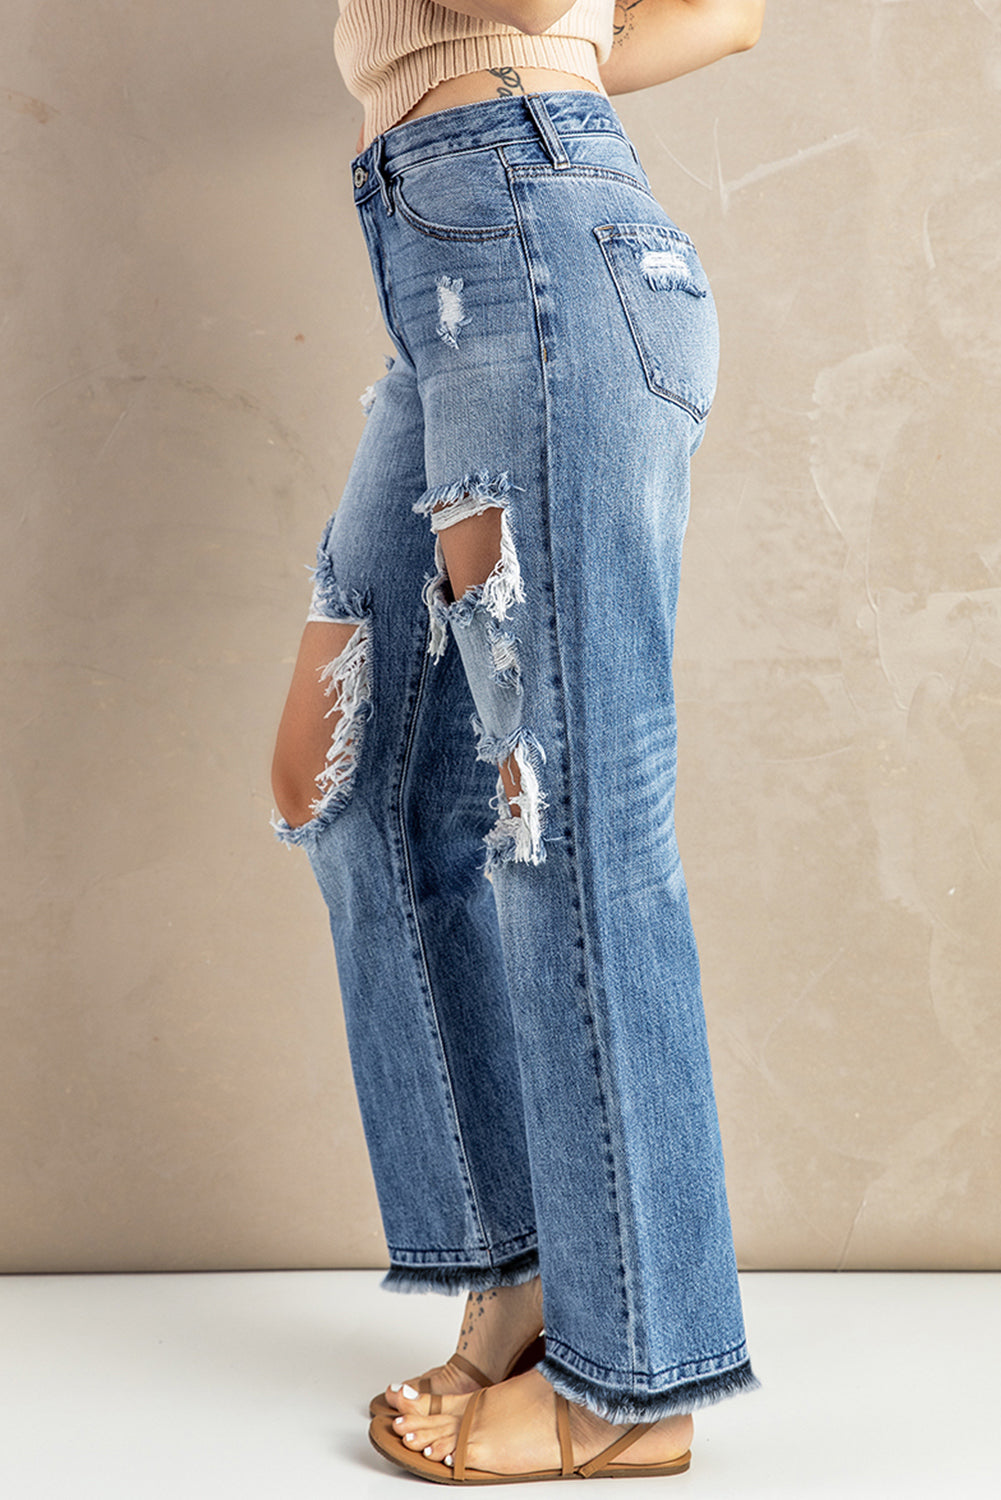 Sky Blue Distressed Holes Hollow-out Boyfriend Jeans Jeans JT's Designer Fashion